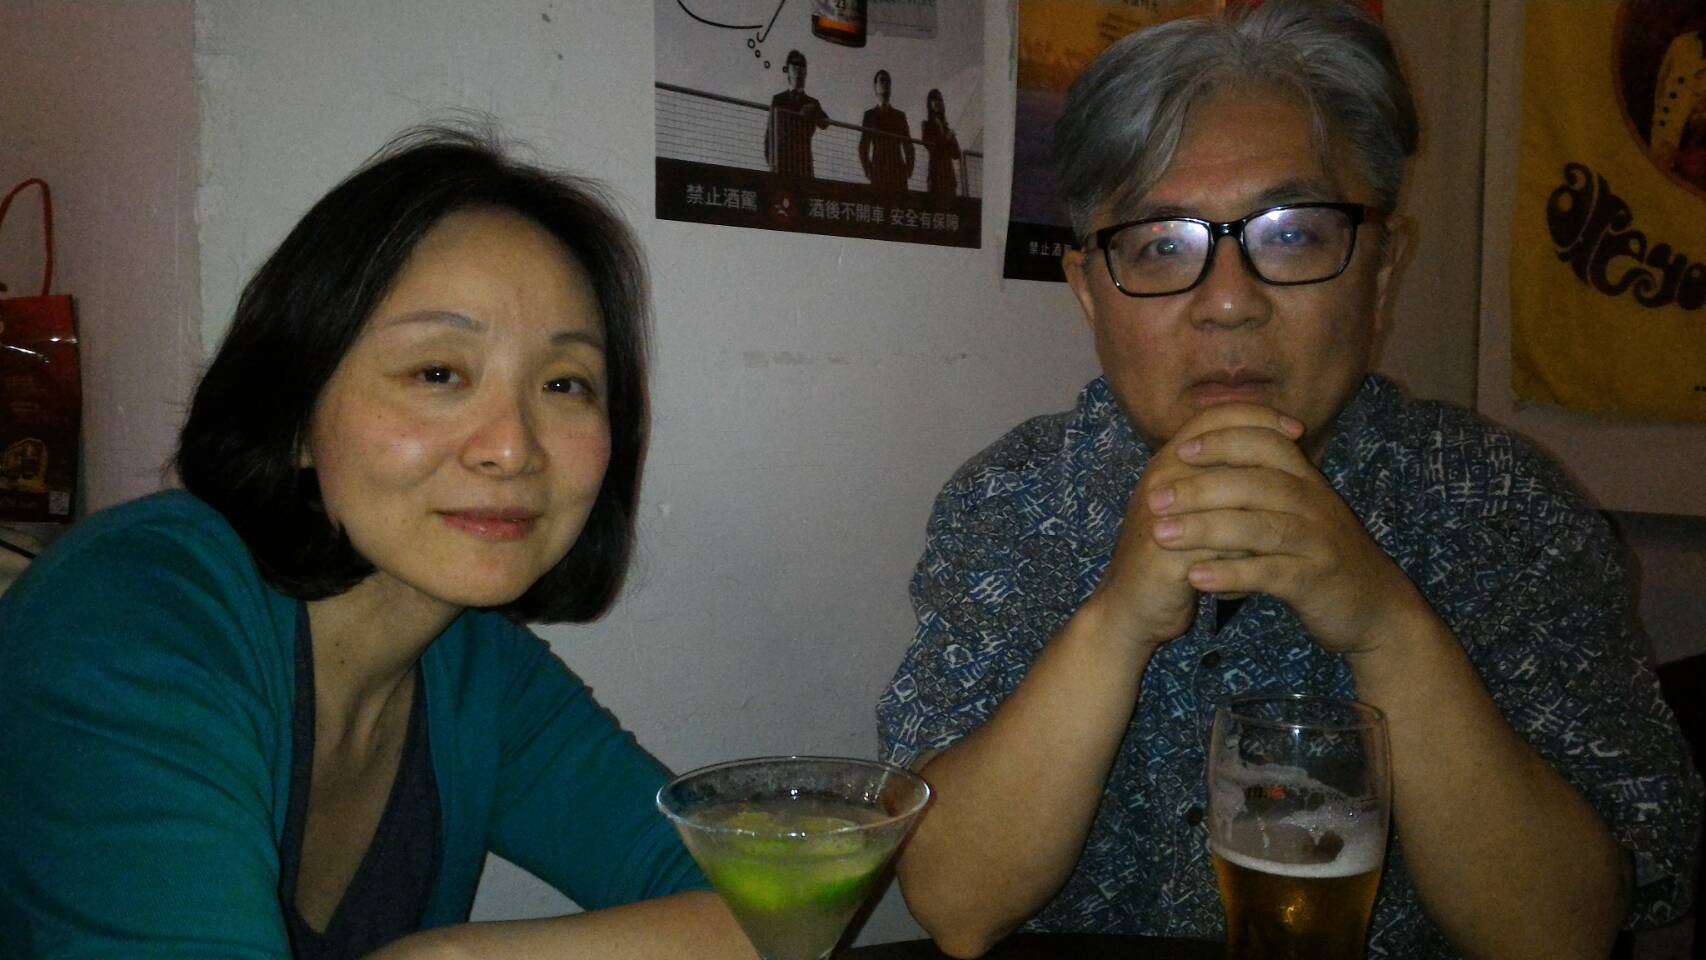 Kinoshita Junichi - Penduduk Baru Senior yang Telah Membentuk Ikatan dengan Taiwan Selama 40 Tahun